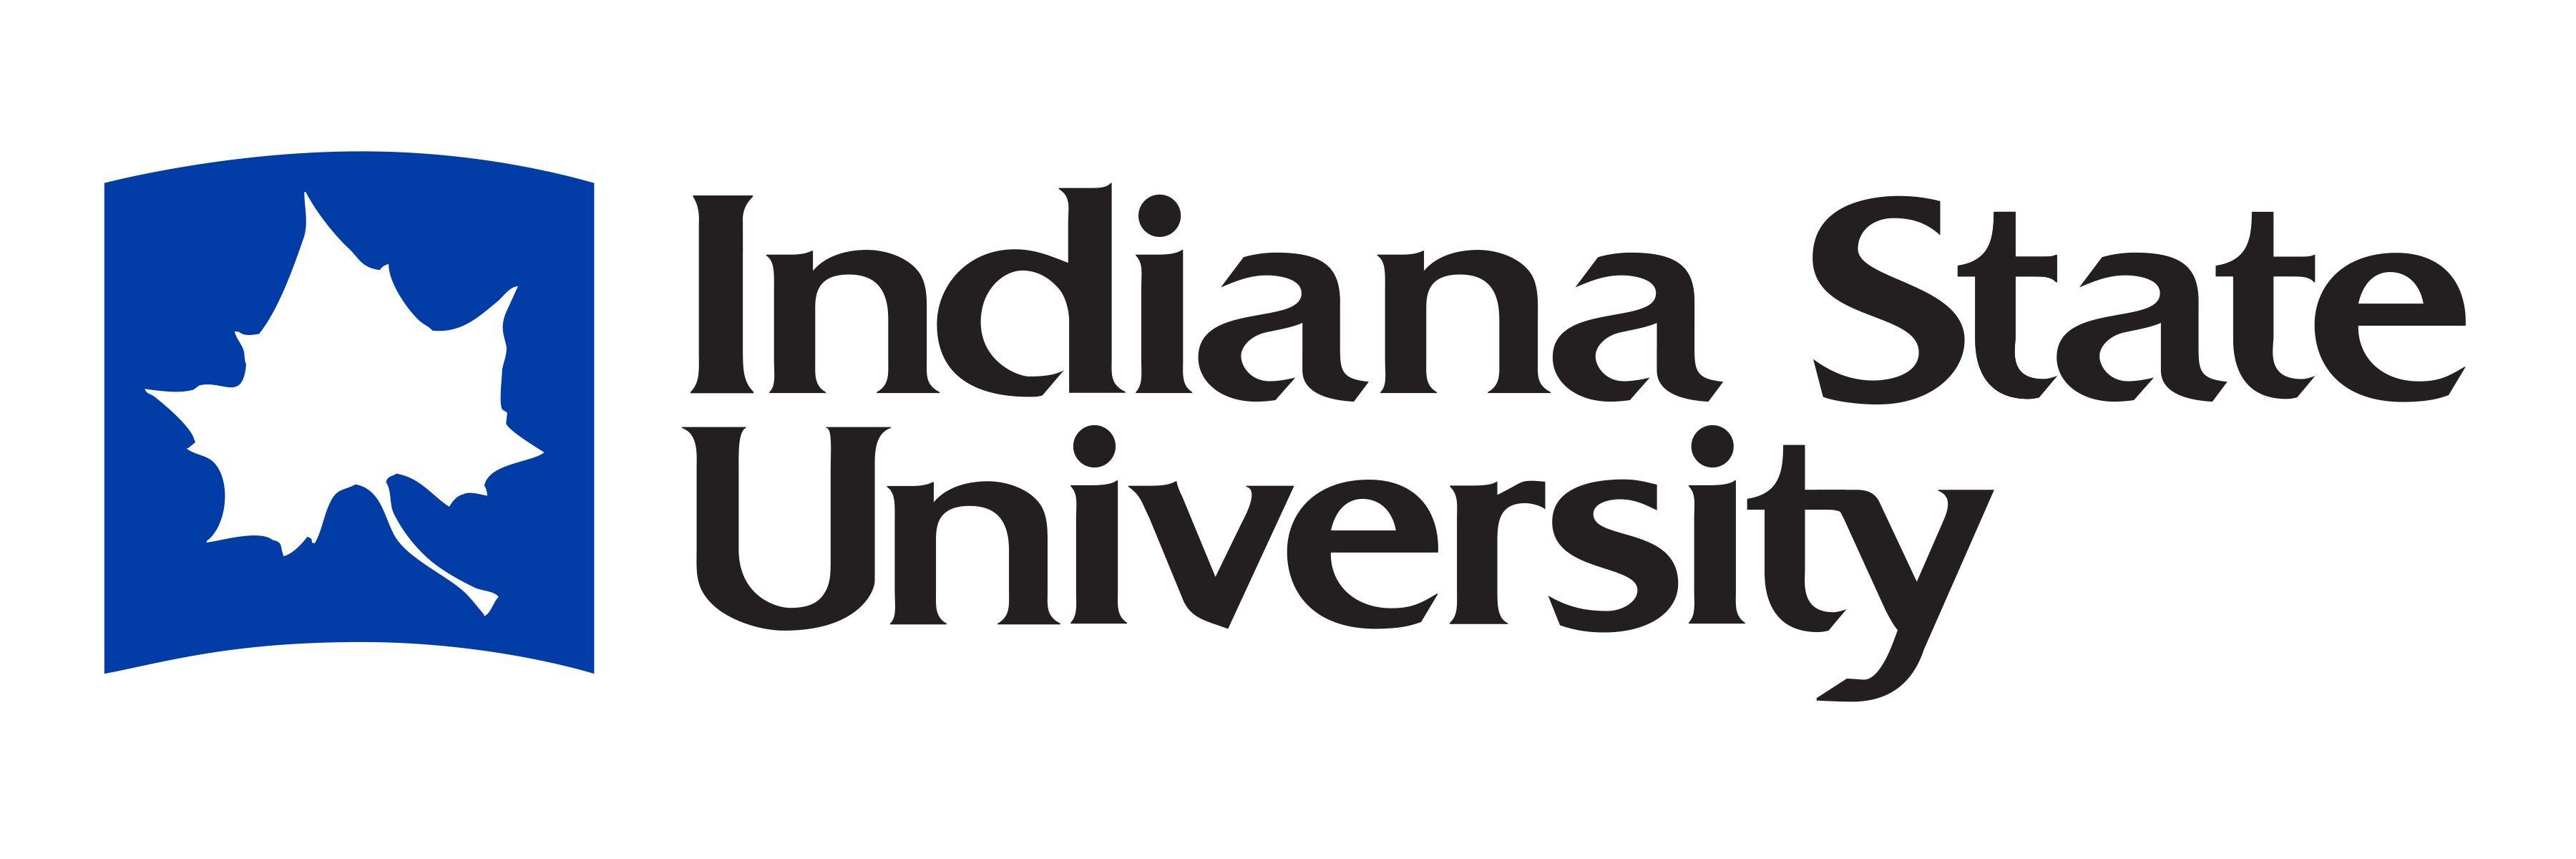 Indiana State Logo - Indiana State University Logo on Behance